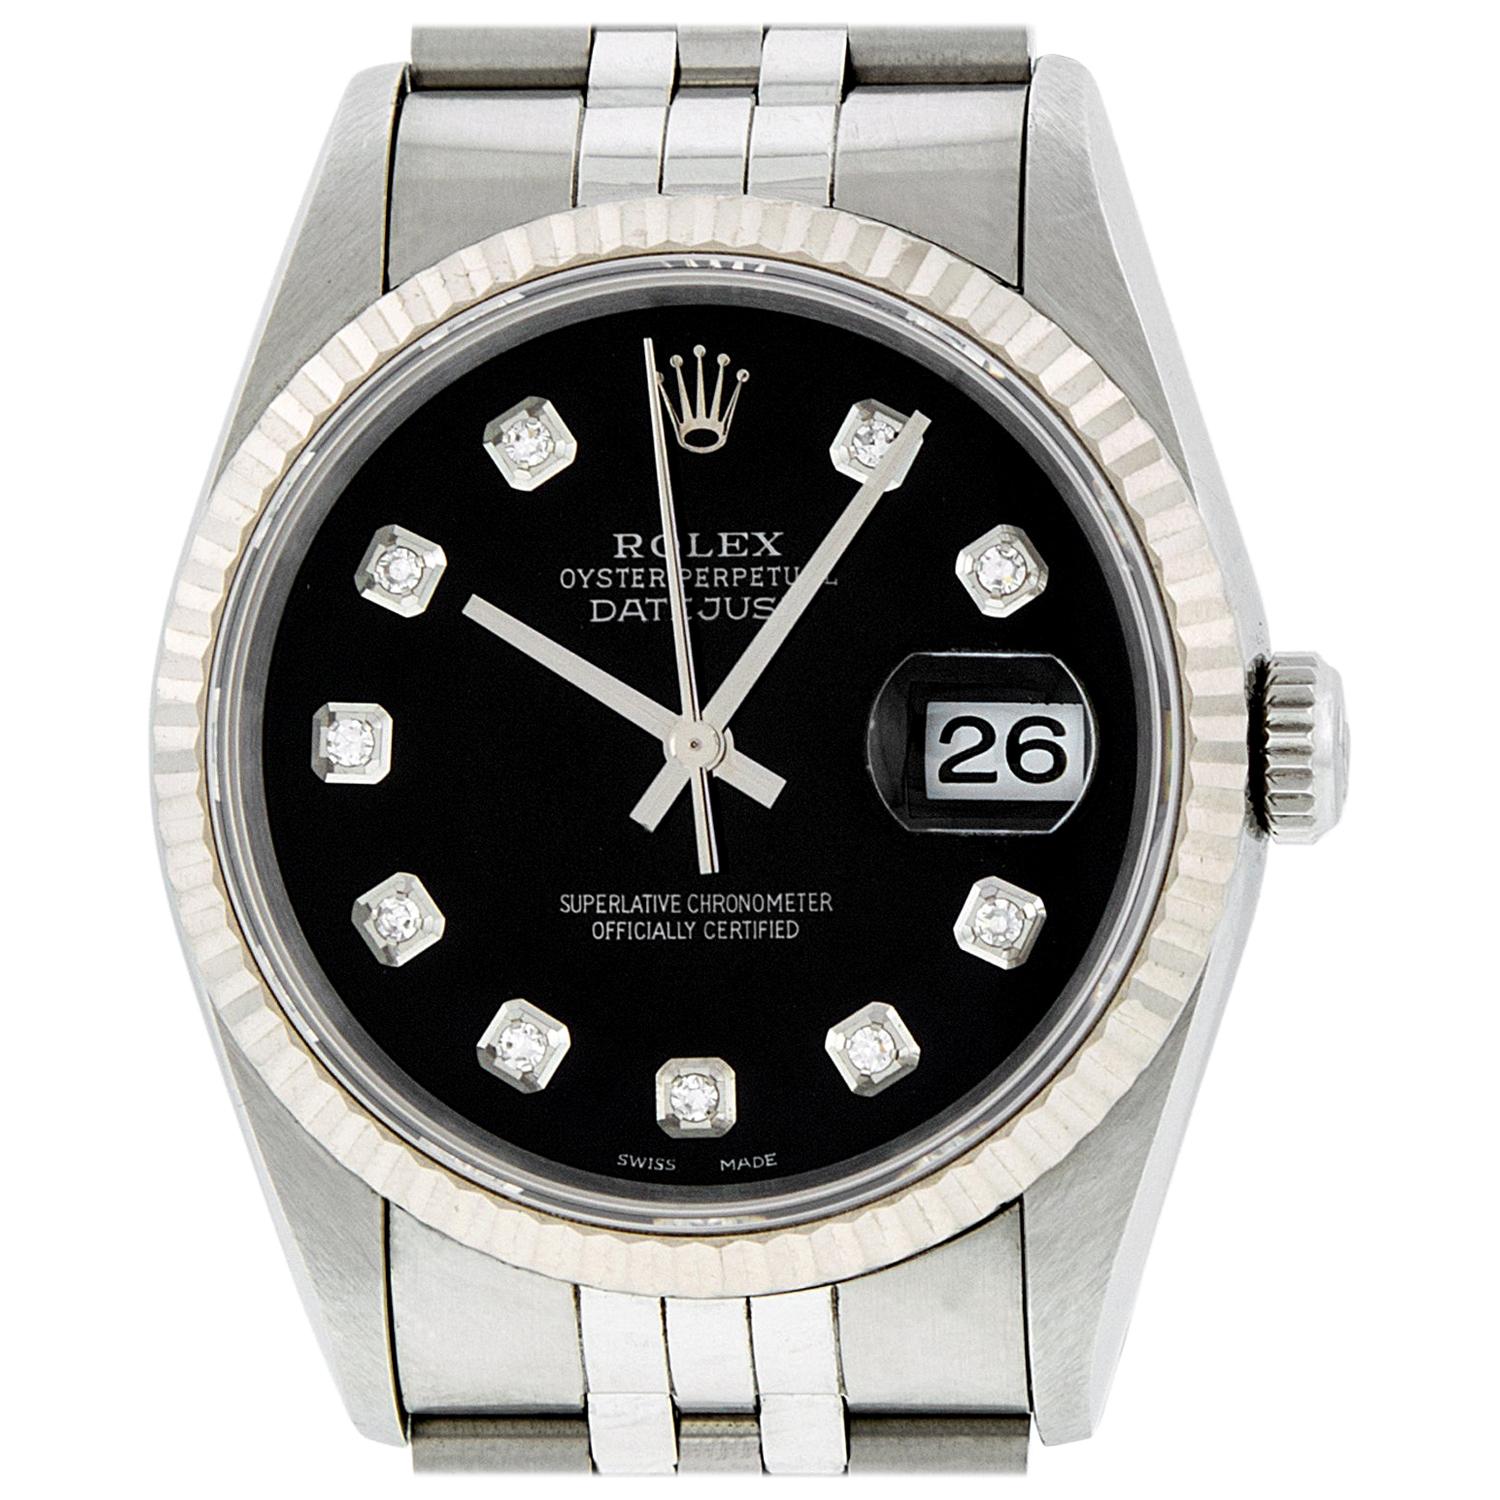 Rolex Men's Datejust 16234 Watch Steel / 18 Karat White Gold Black Diamond Dial